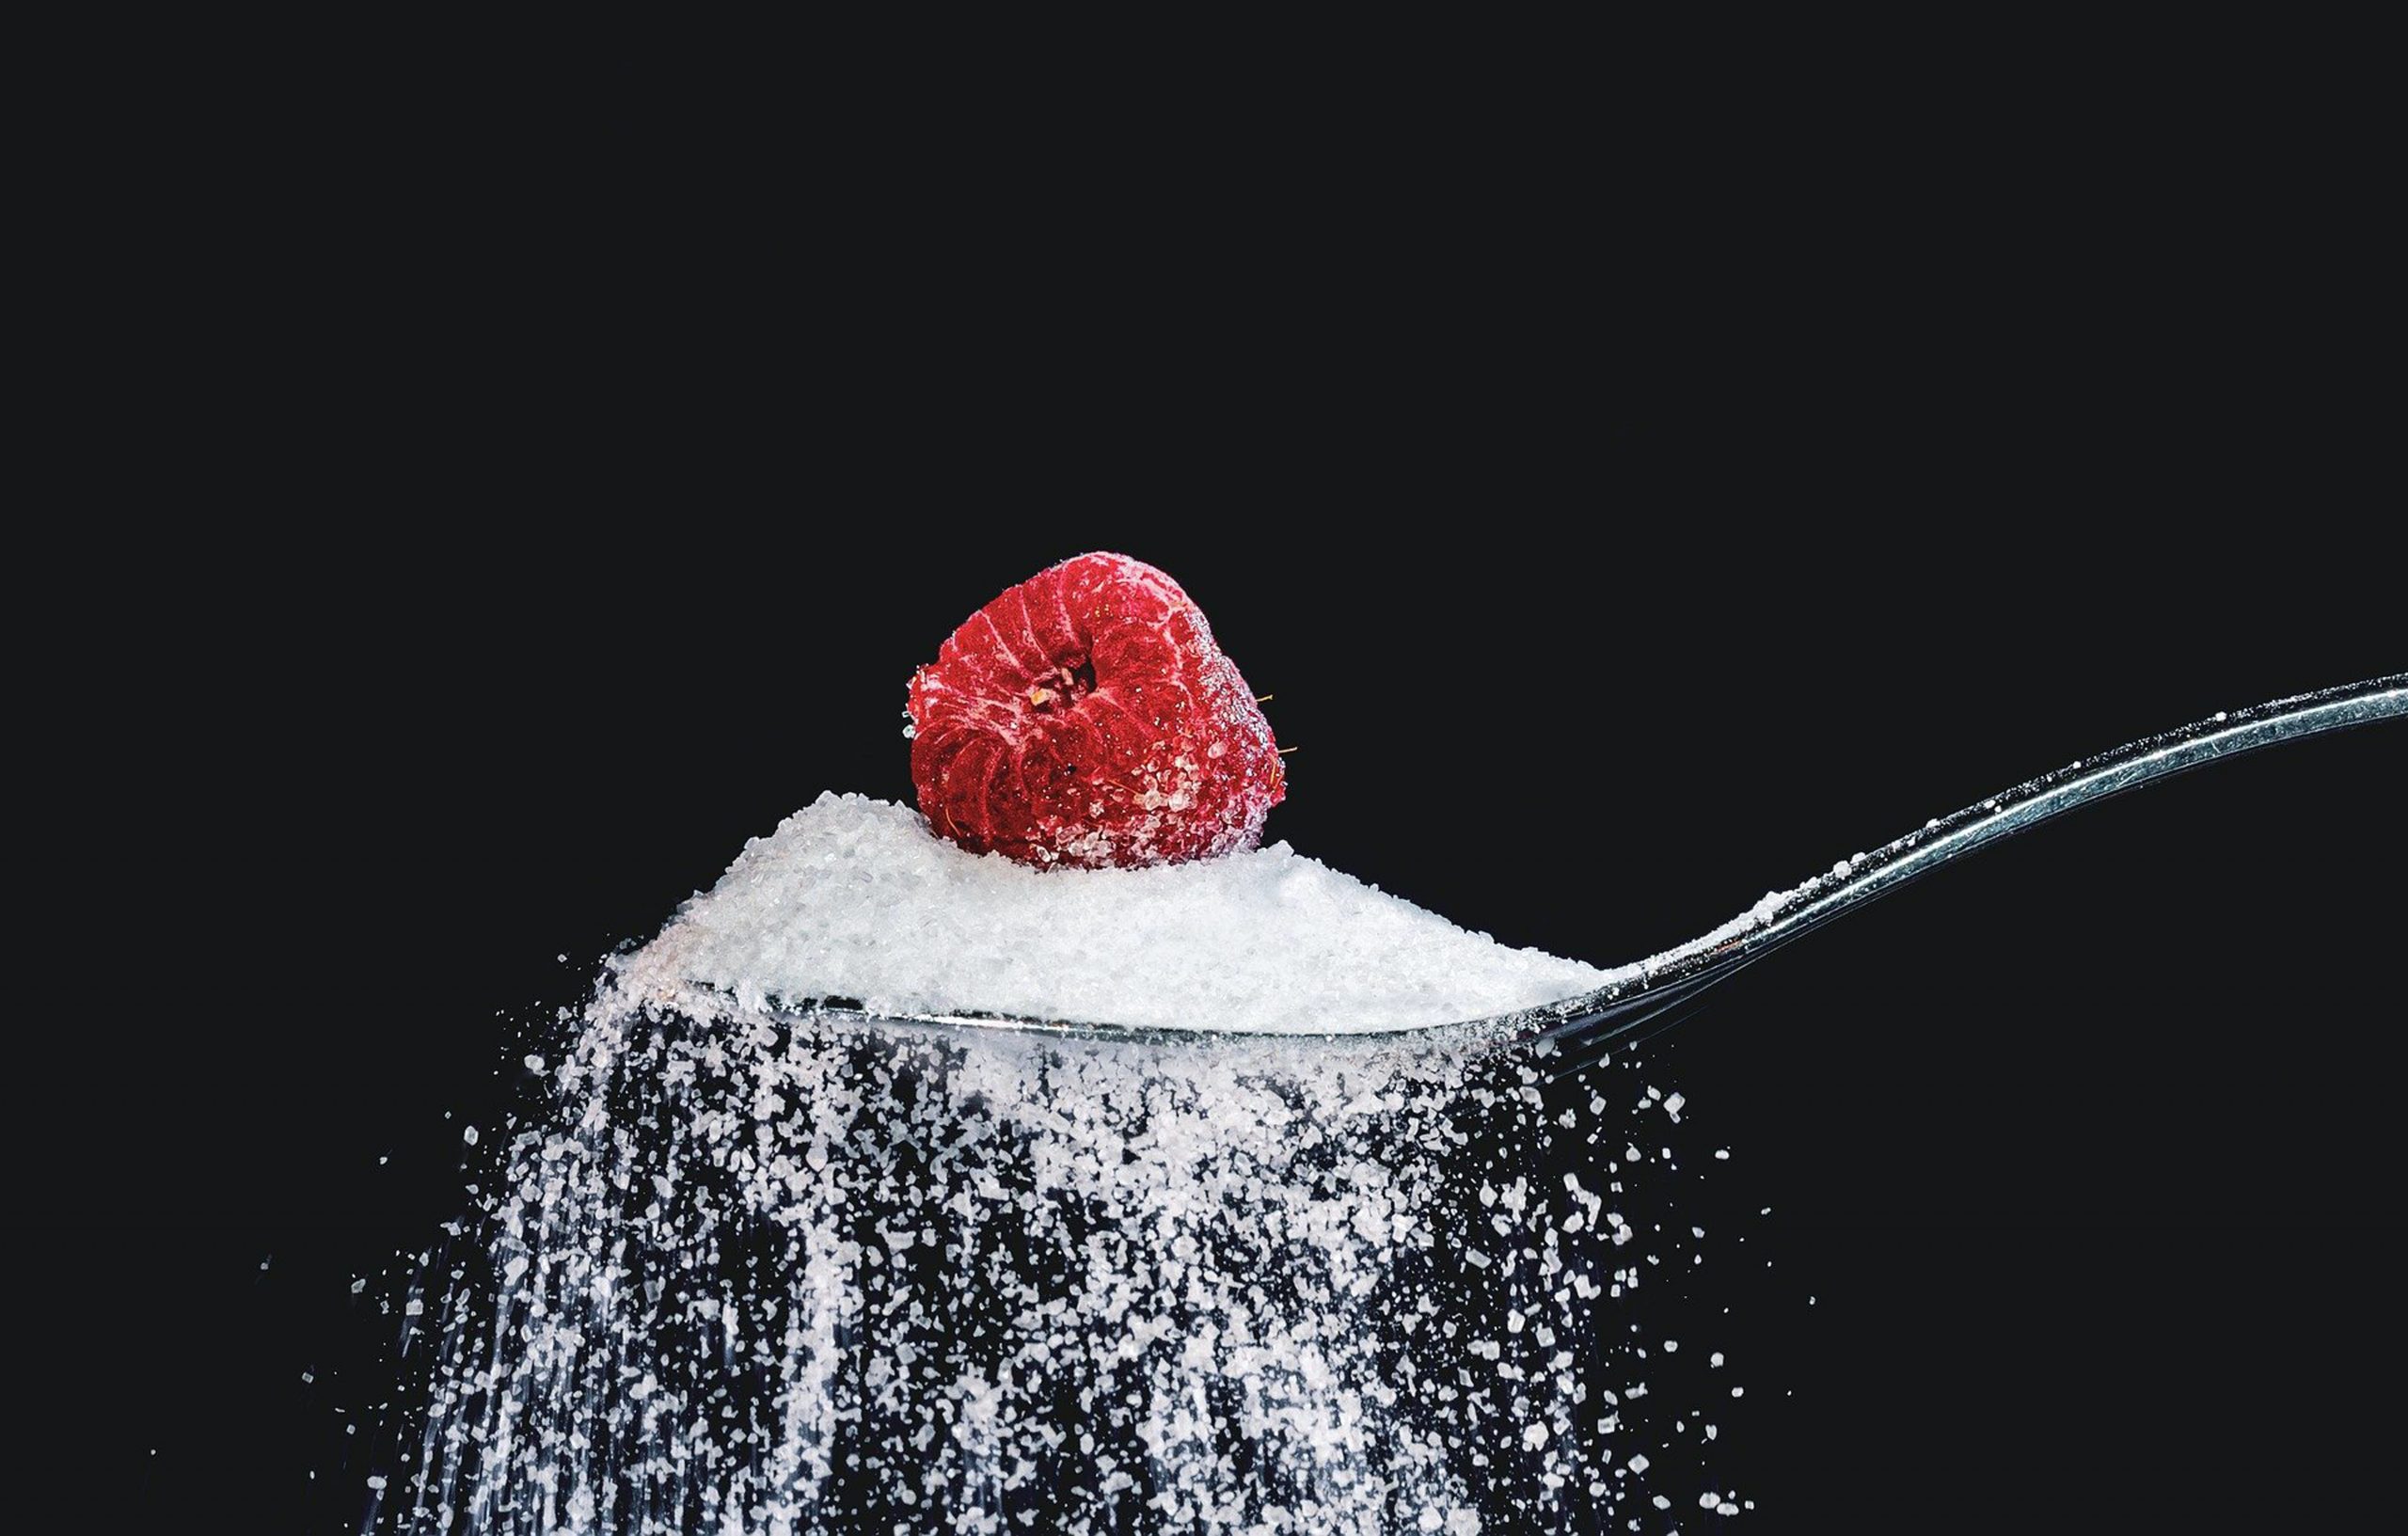 A cukor drágult leginkább az elmúlt évben